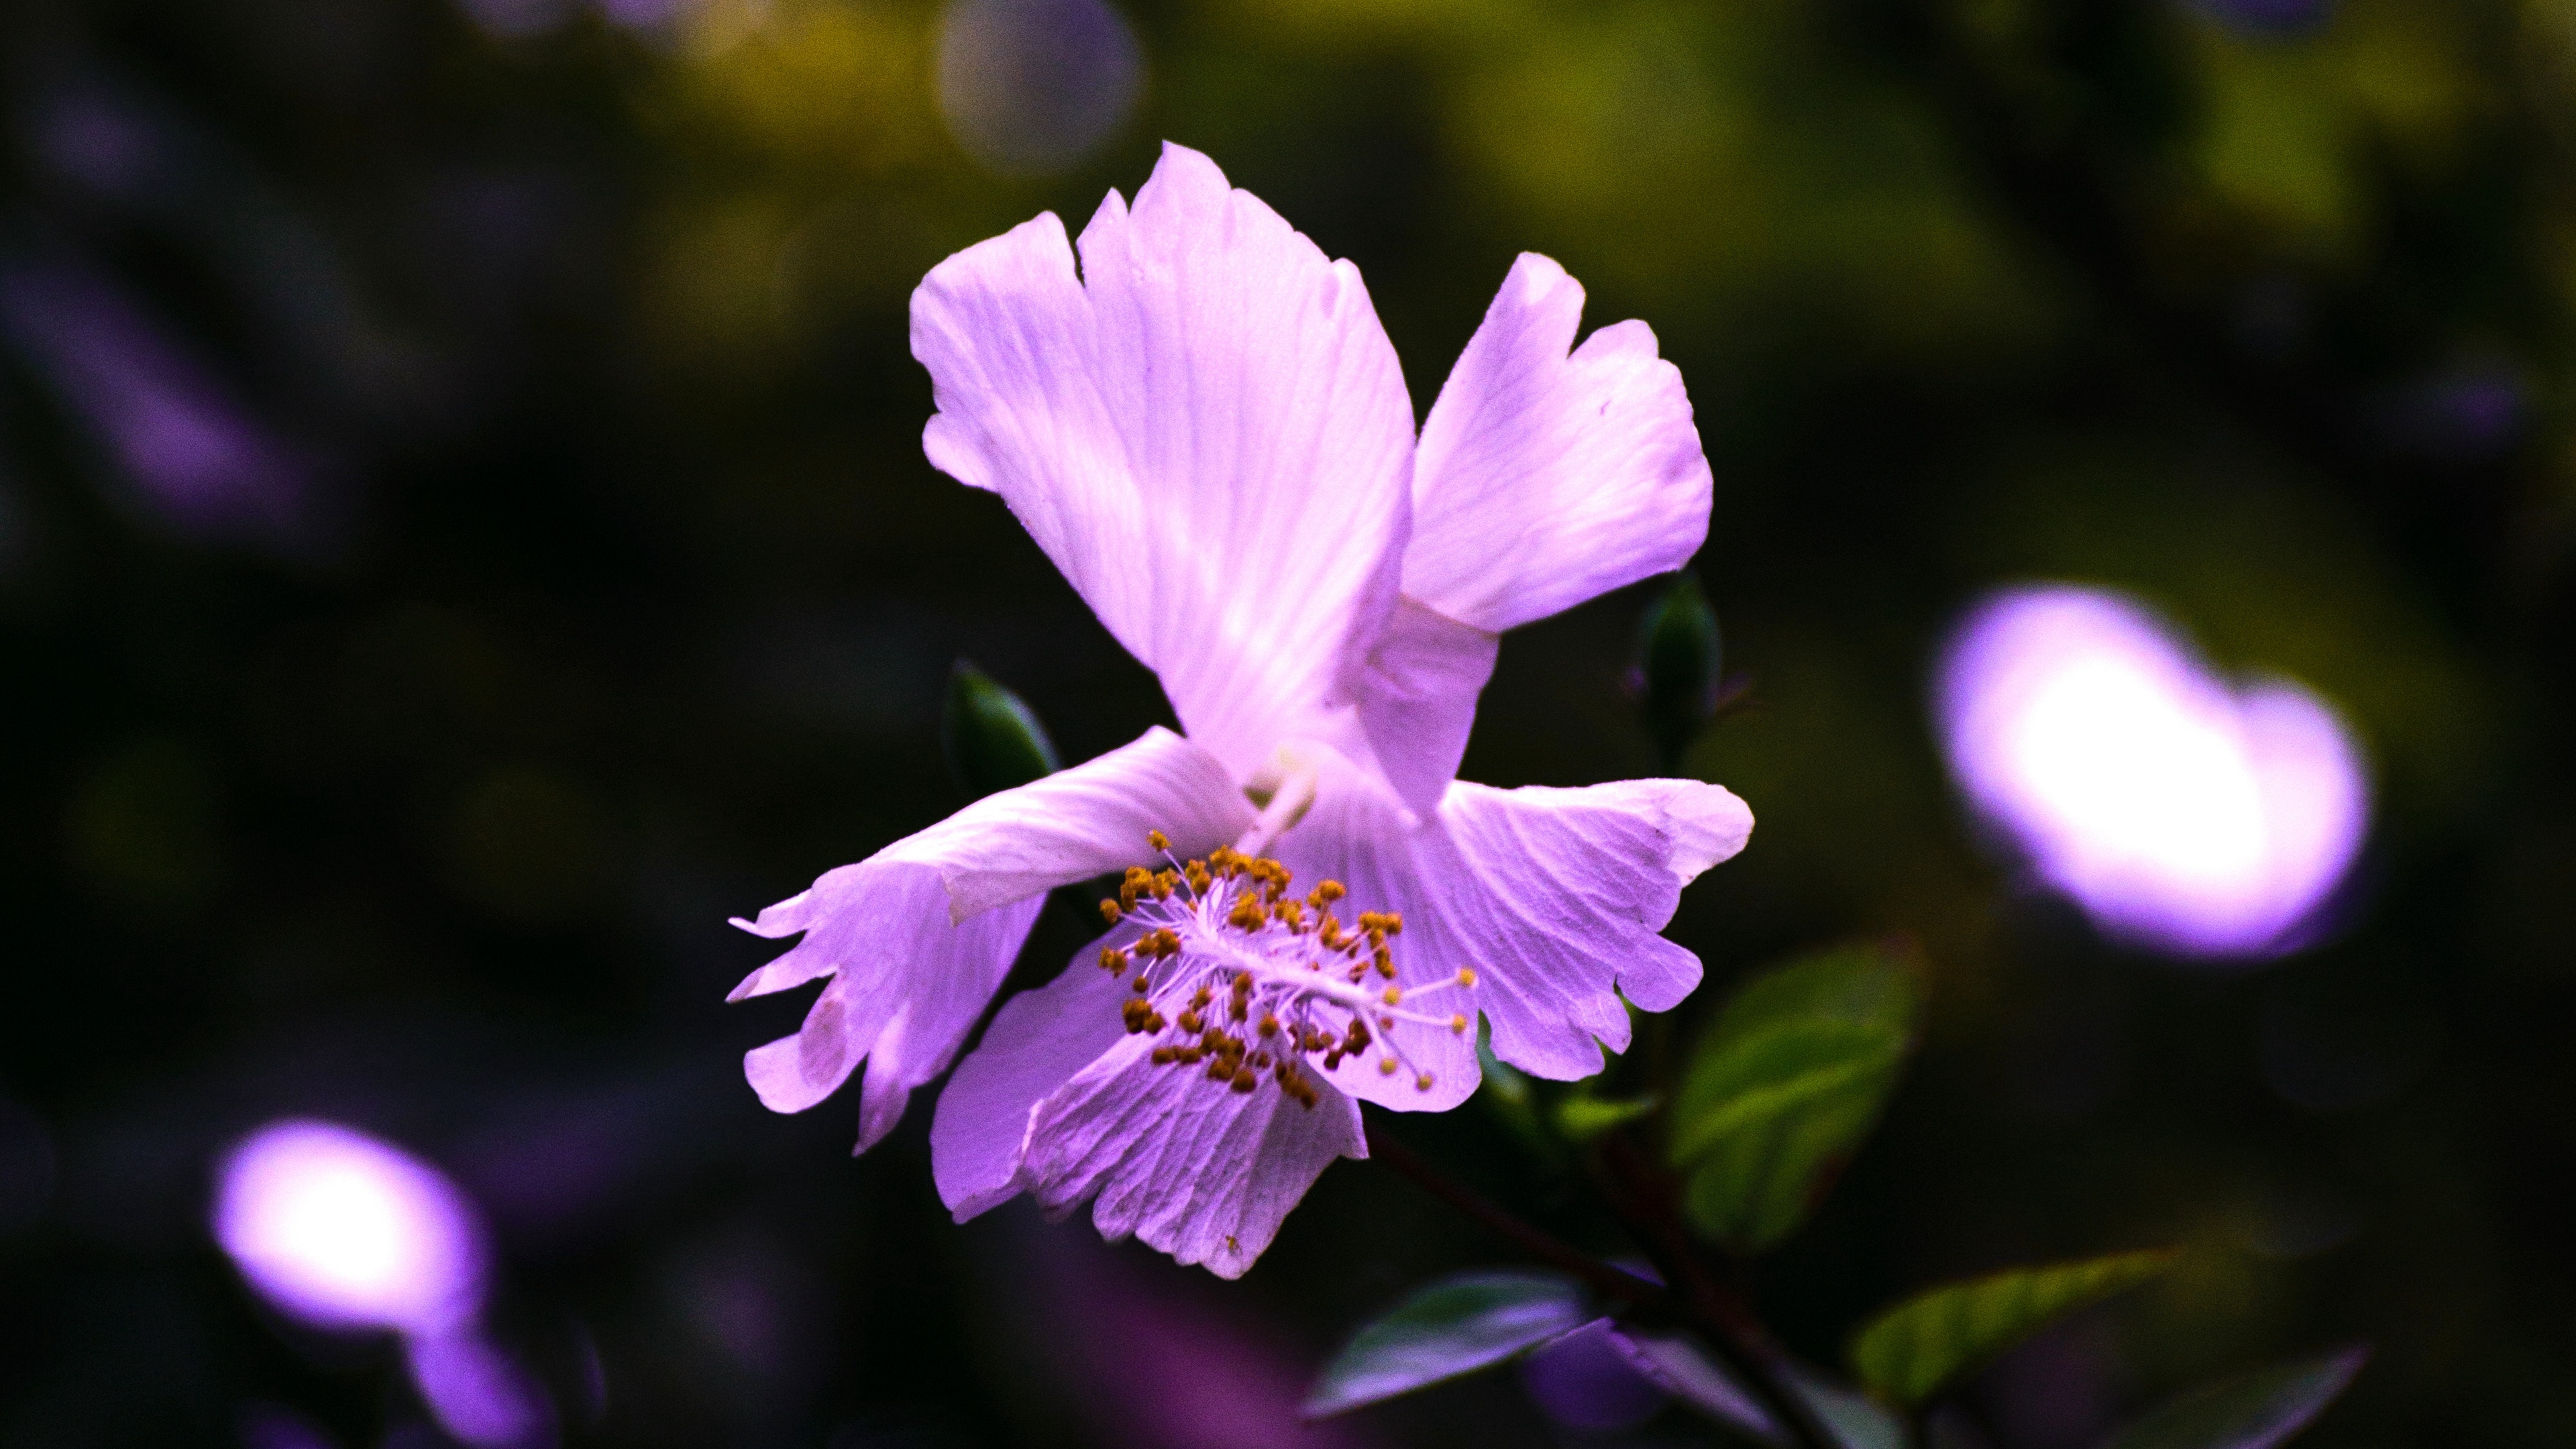 hibiscus flower violet 4k 1540064569 - hibiscus, flower, violet 4k - Violet, Hibiscus, flower